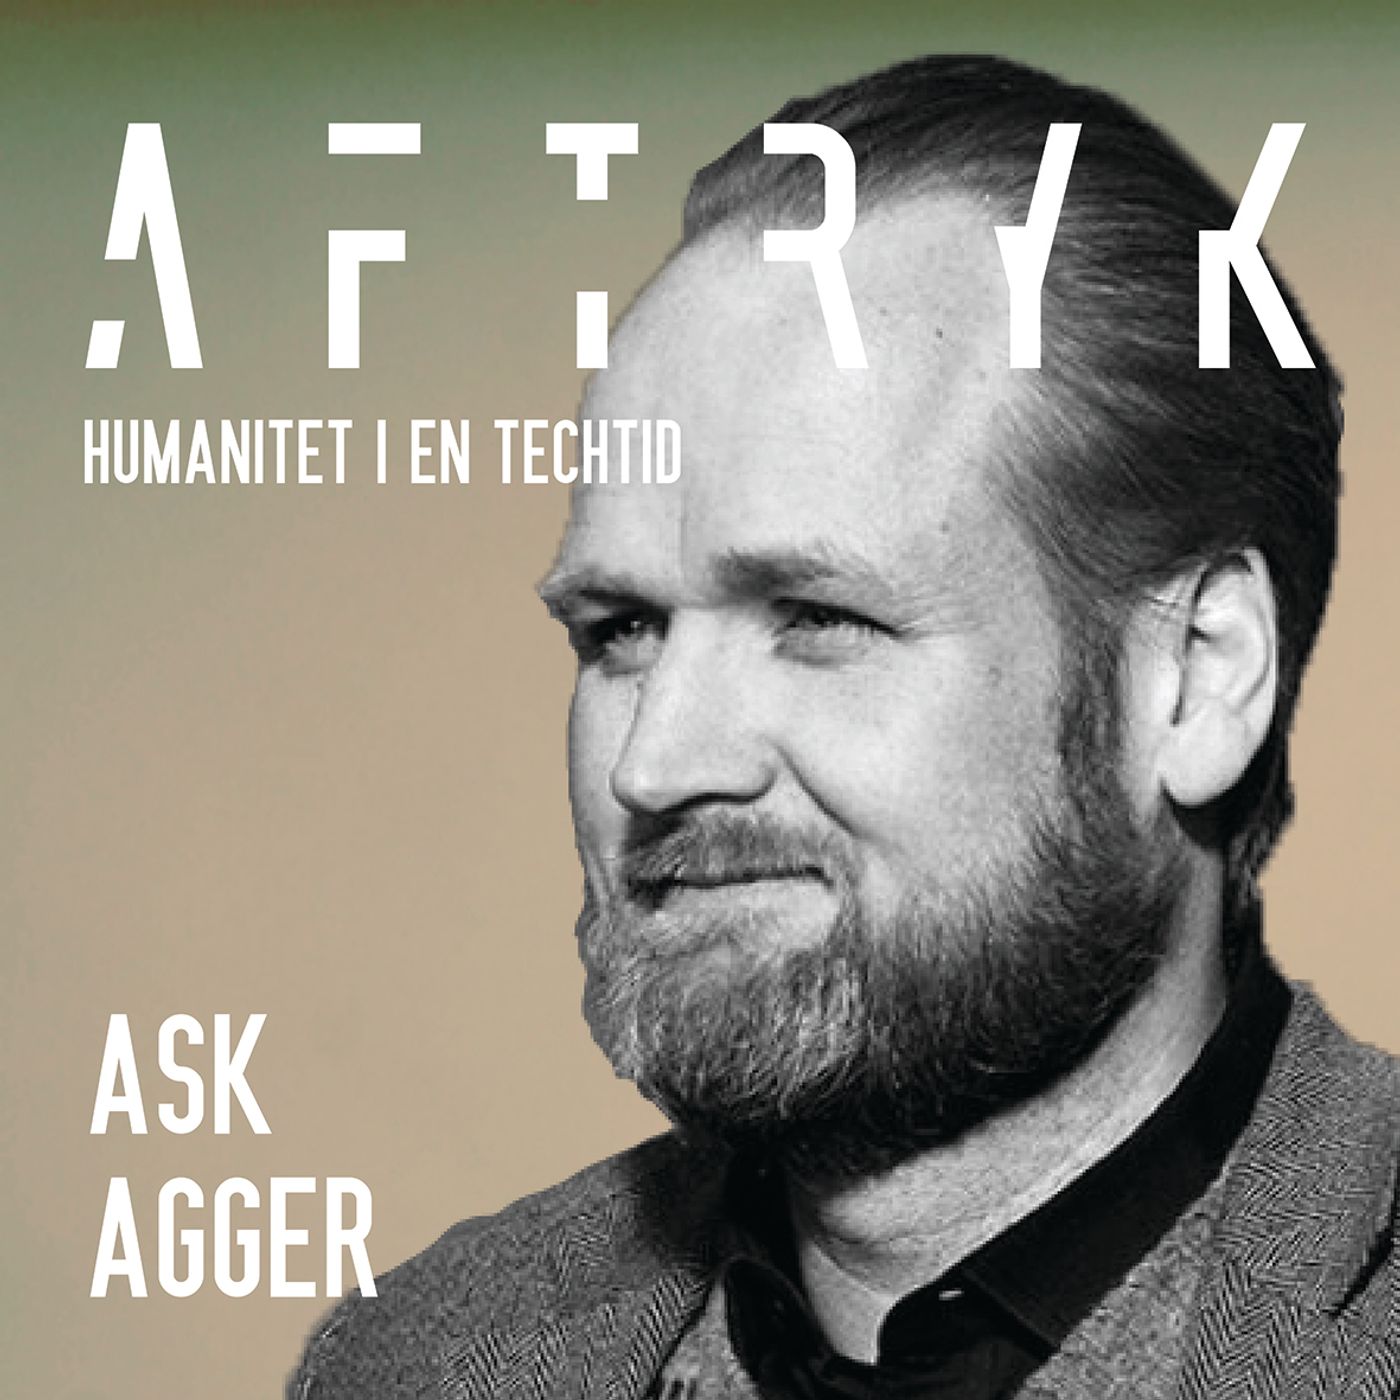 08. Aftryk - Ask Agger: Lederskab gennem tillid og medfortælling